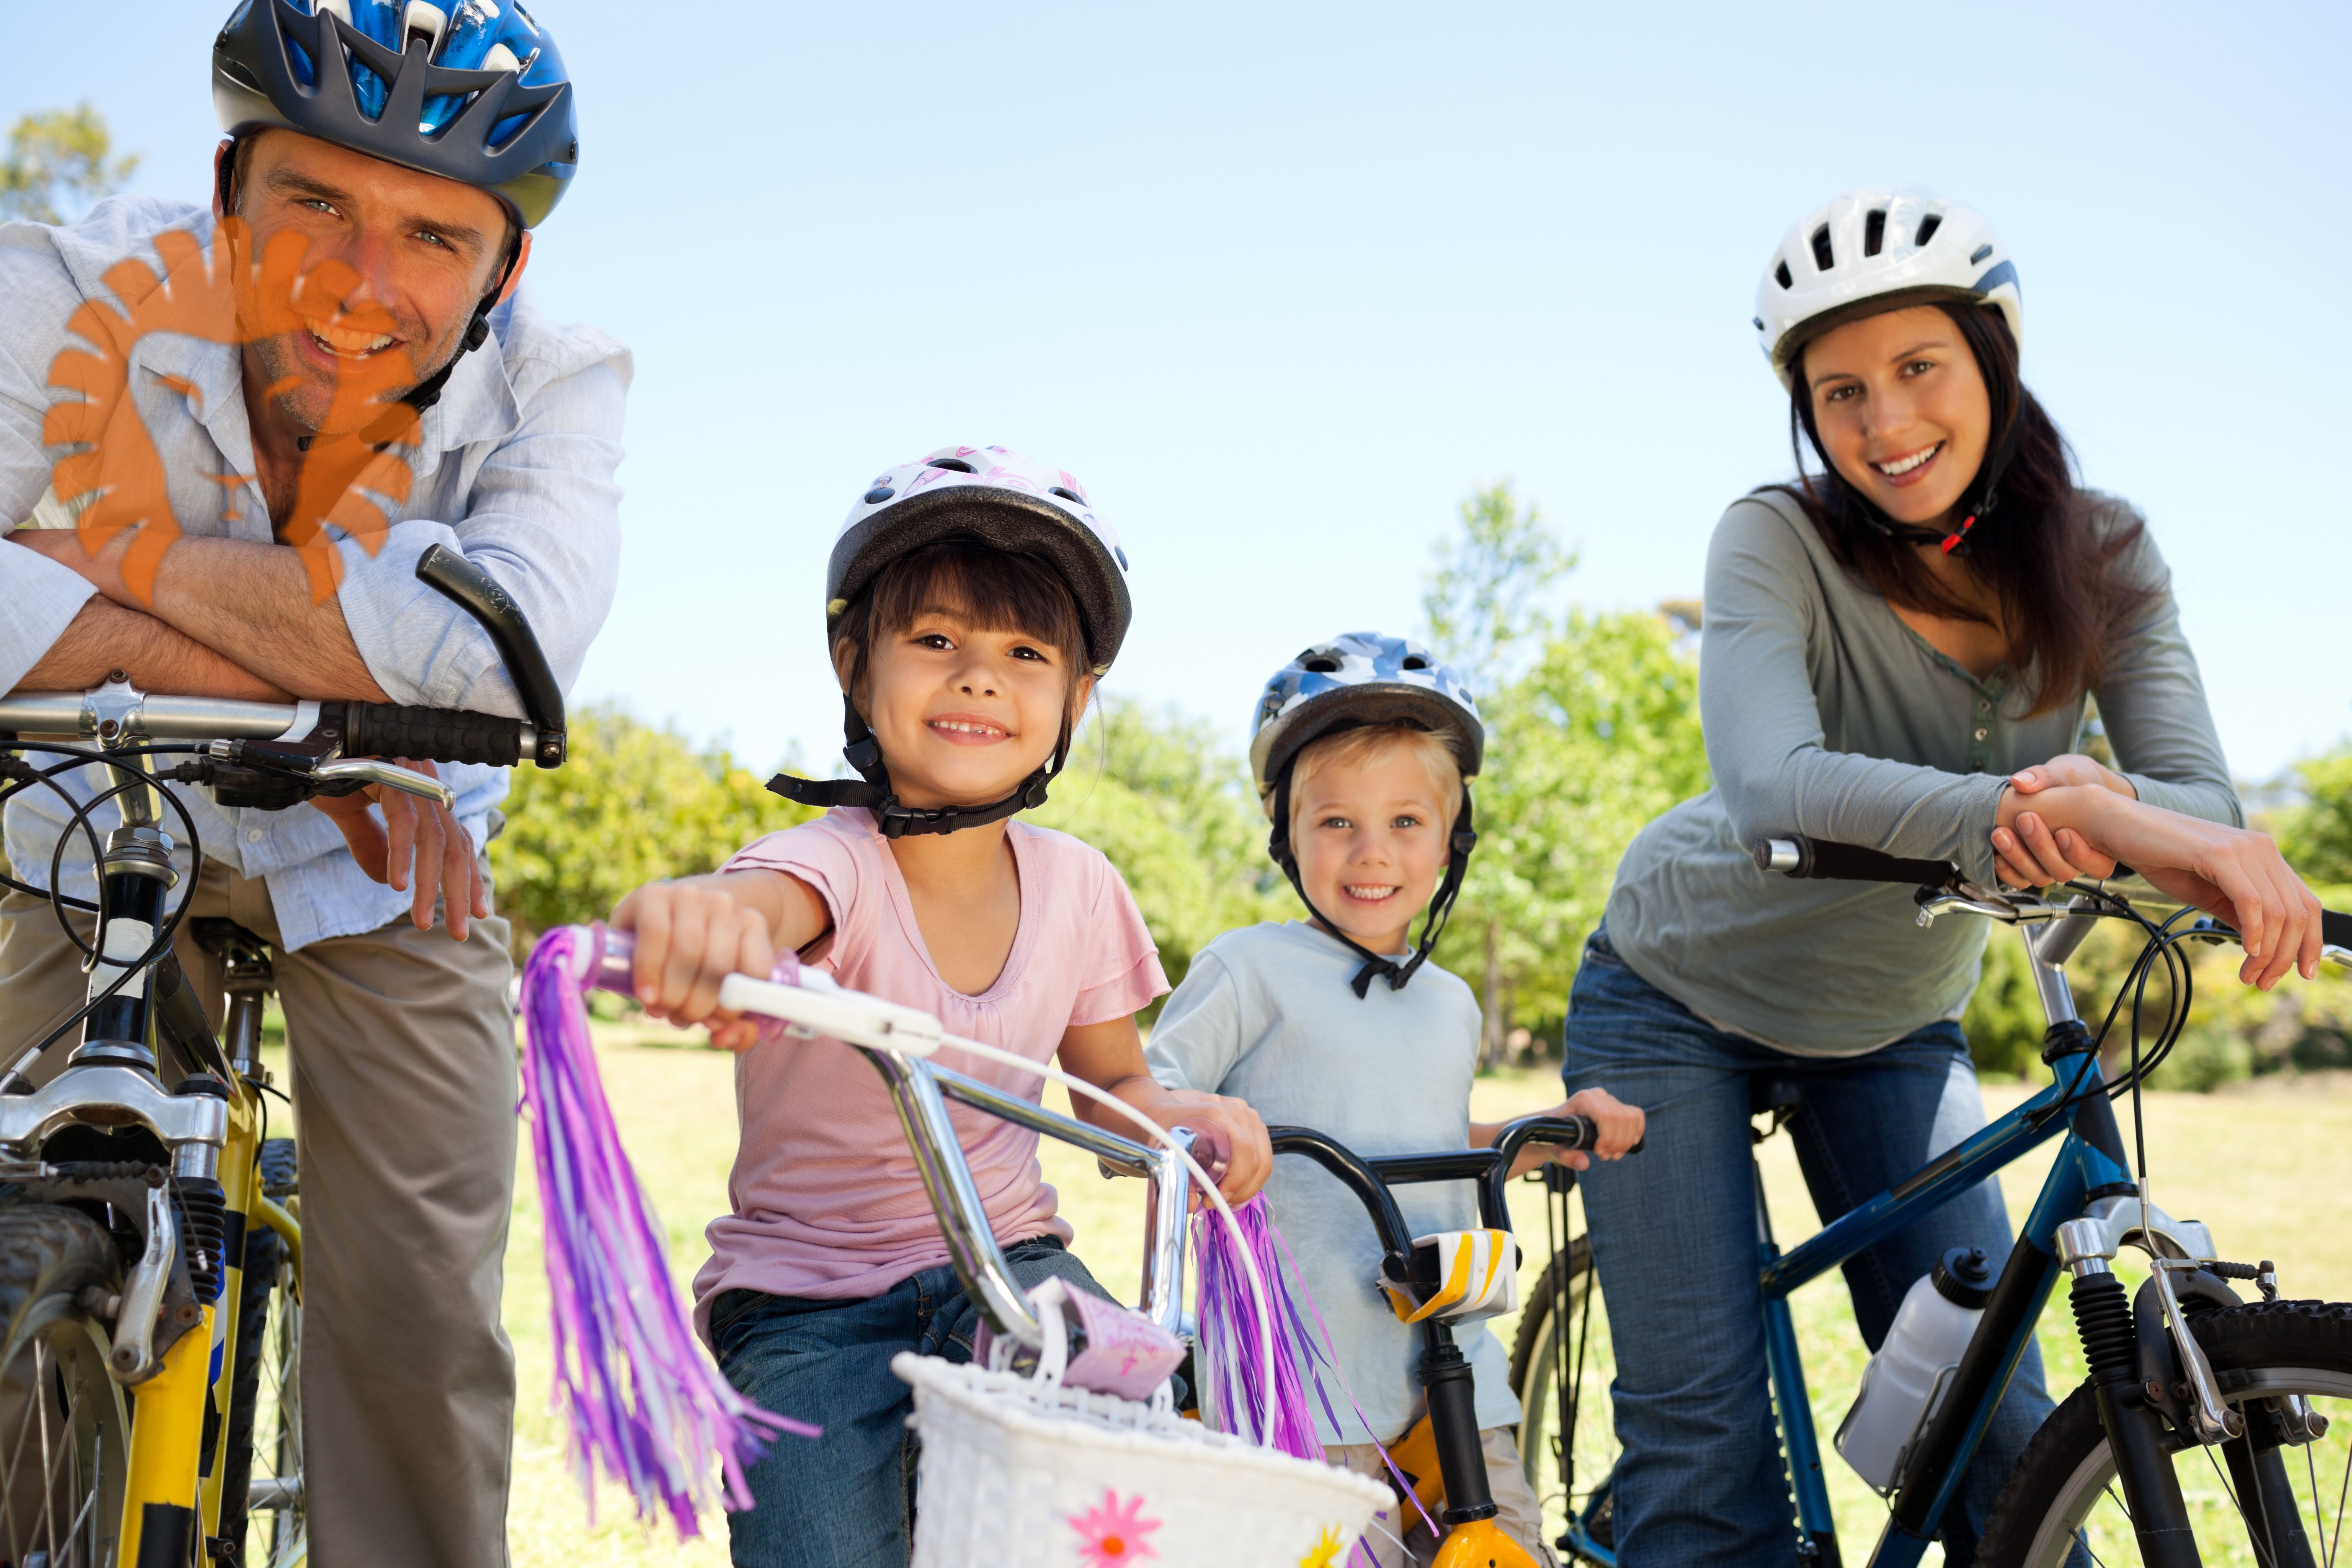 Организация свободного времени в семье. Велосипеды для всей семьи. Дети с велосипедом. Семья на велосипедах. Велопрогулки семьей.